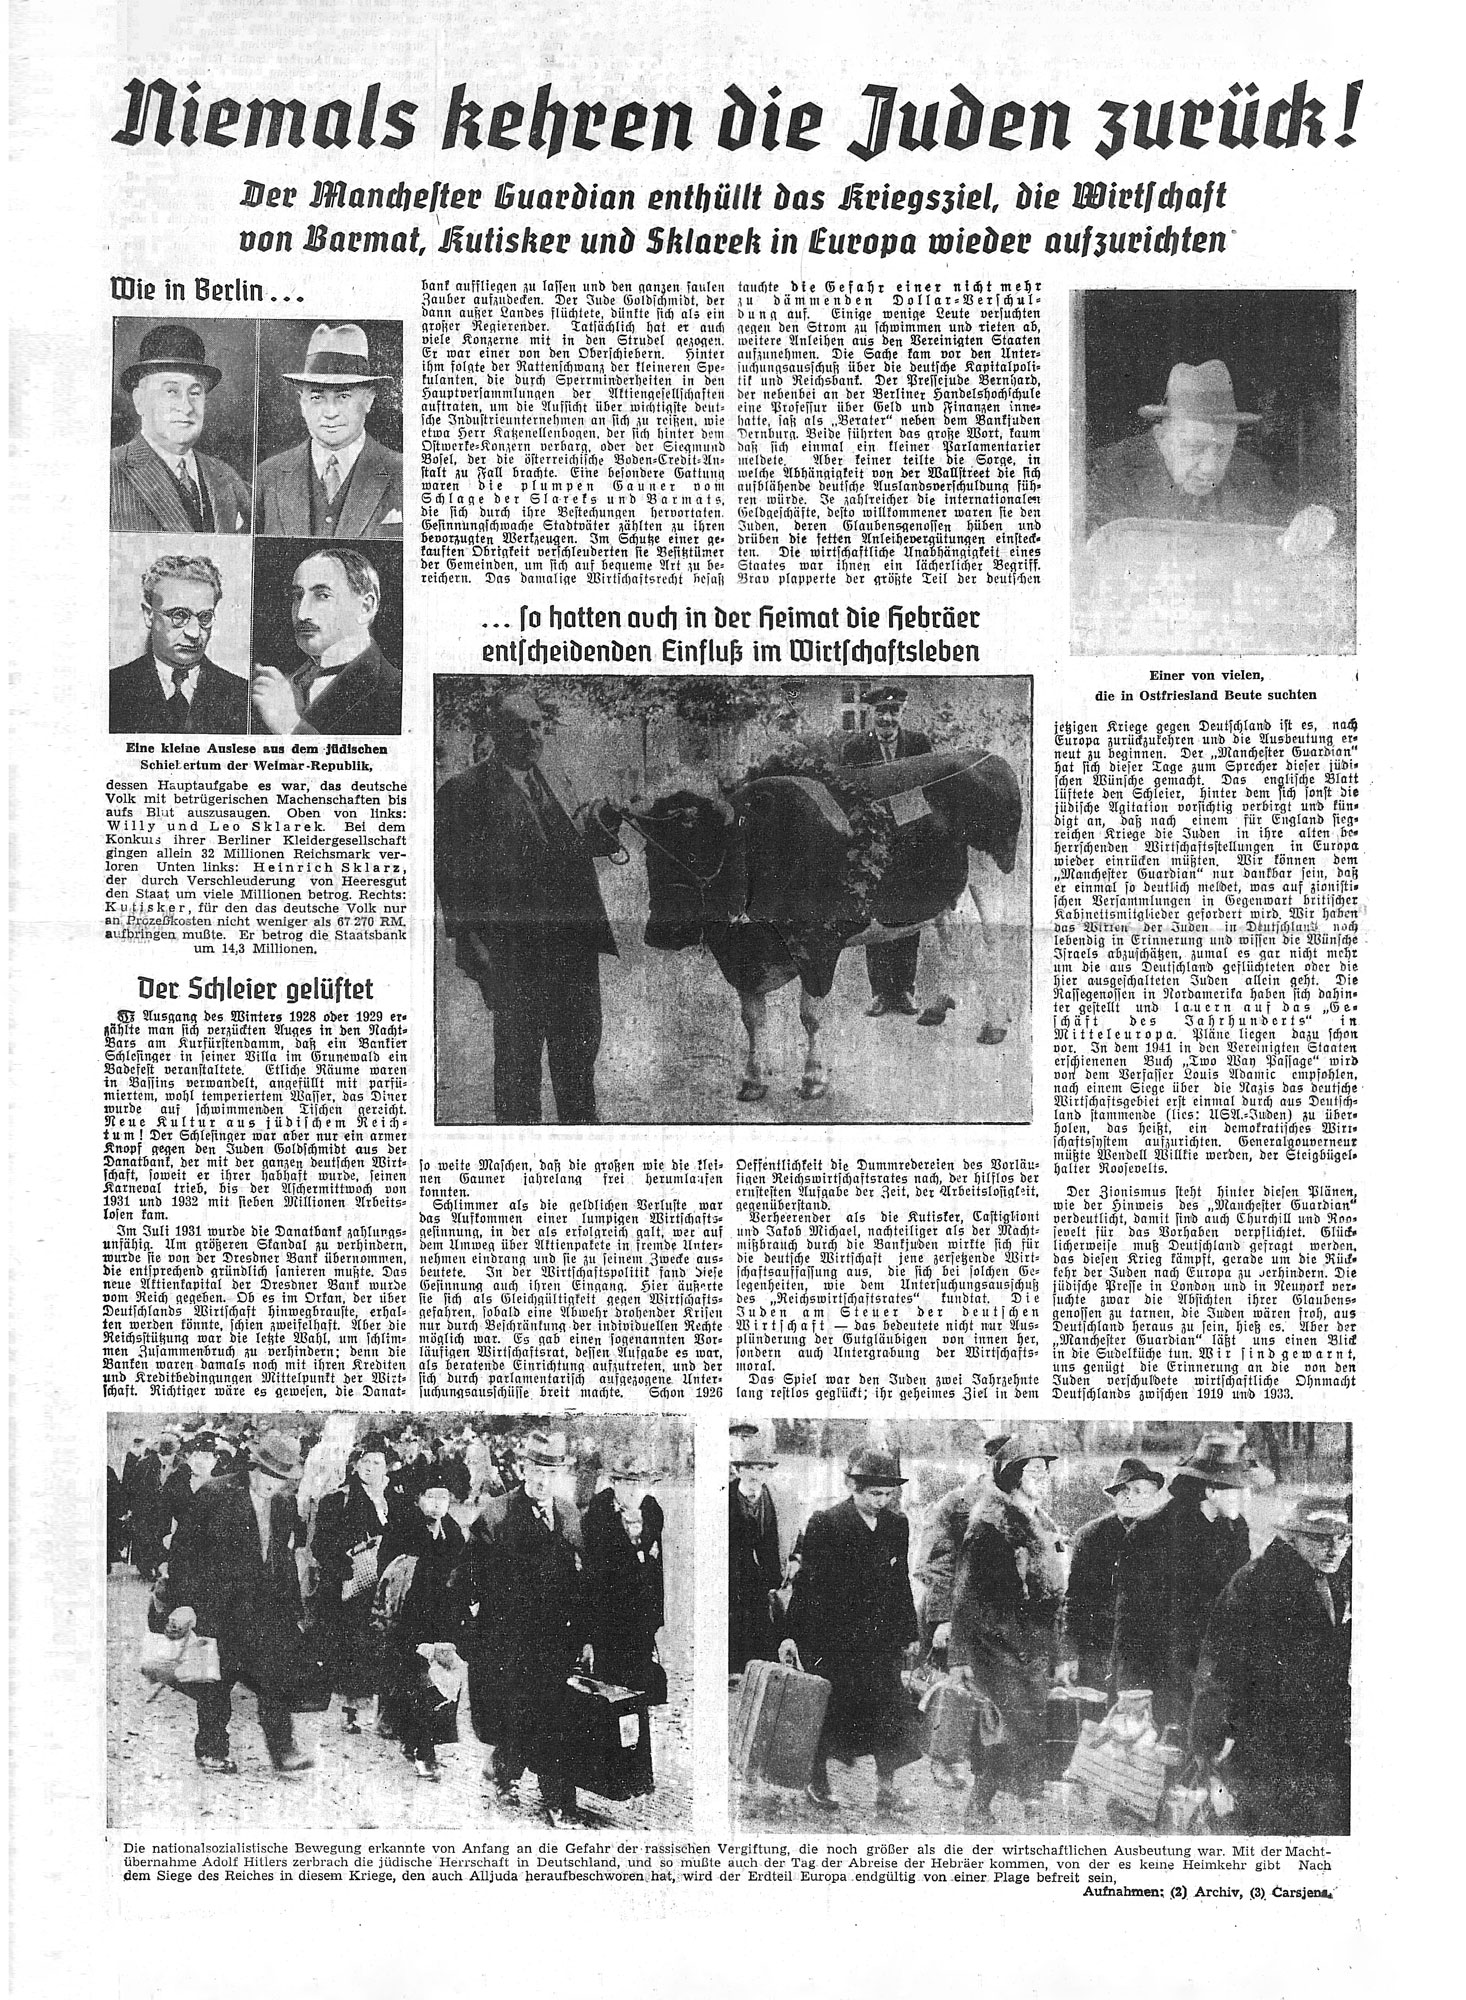 In der Ostfriesischen Tageszeitung wurde am 11. Februar 1942 – dreieinhalb Monate nach den Ereignissen der Vertreibung der letzten jüdischen Menschen aus Ostfriesland - berichtet. Der Beitrag wurde illustriert mit Fotos, die Menschen beim Verlassen des jüdischen Altenheims in Emden am 22./23. Oktober 1941 zeigen.